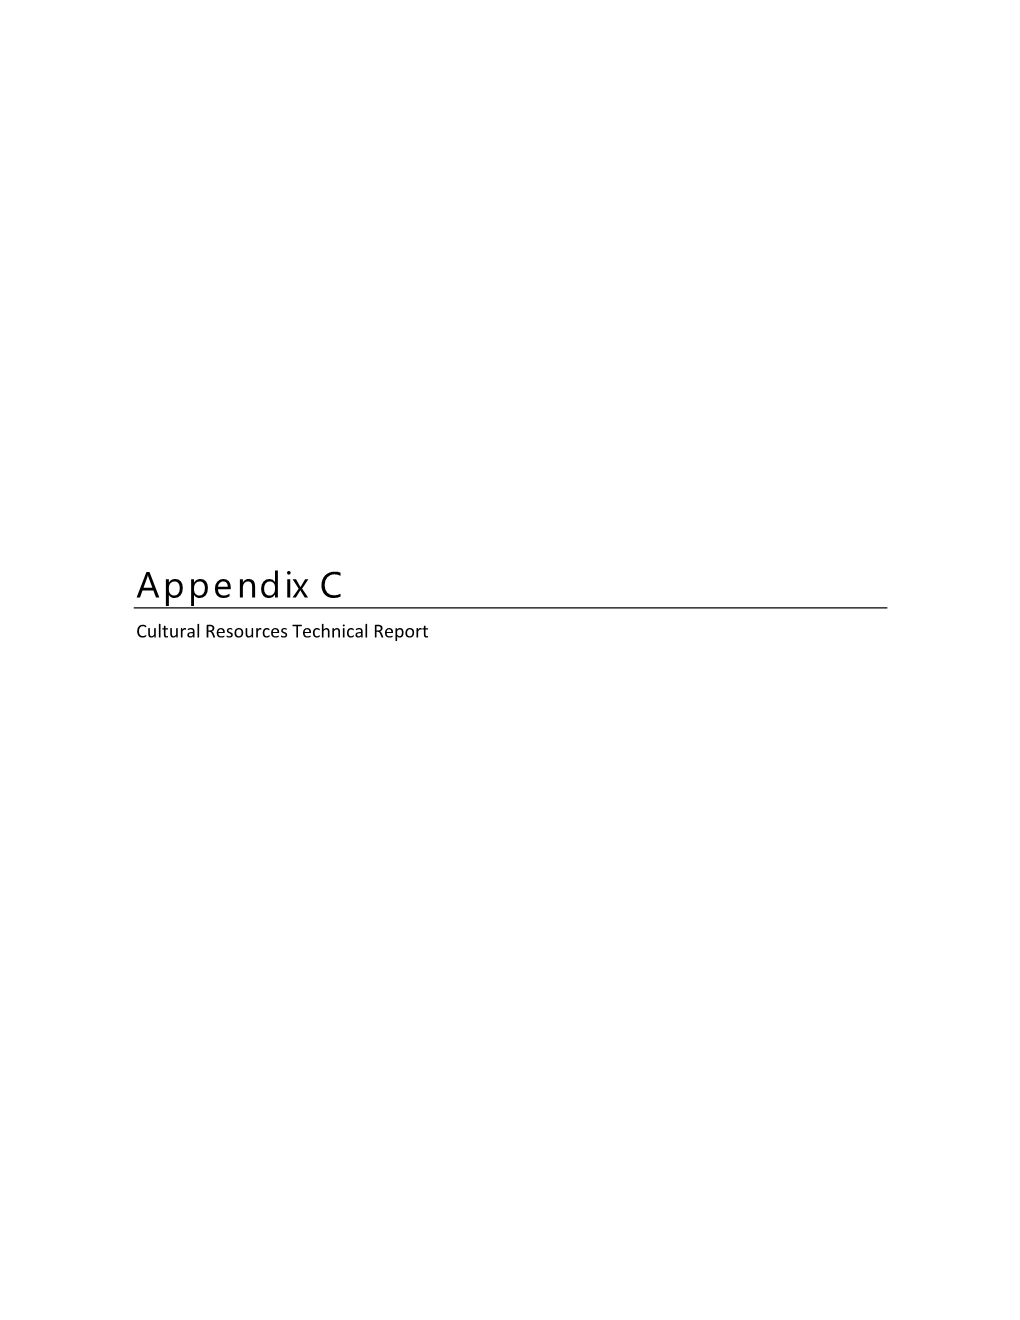 Appendix C Cultural Resources Technical Report